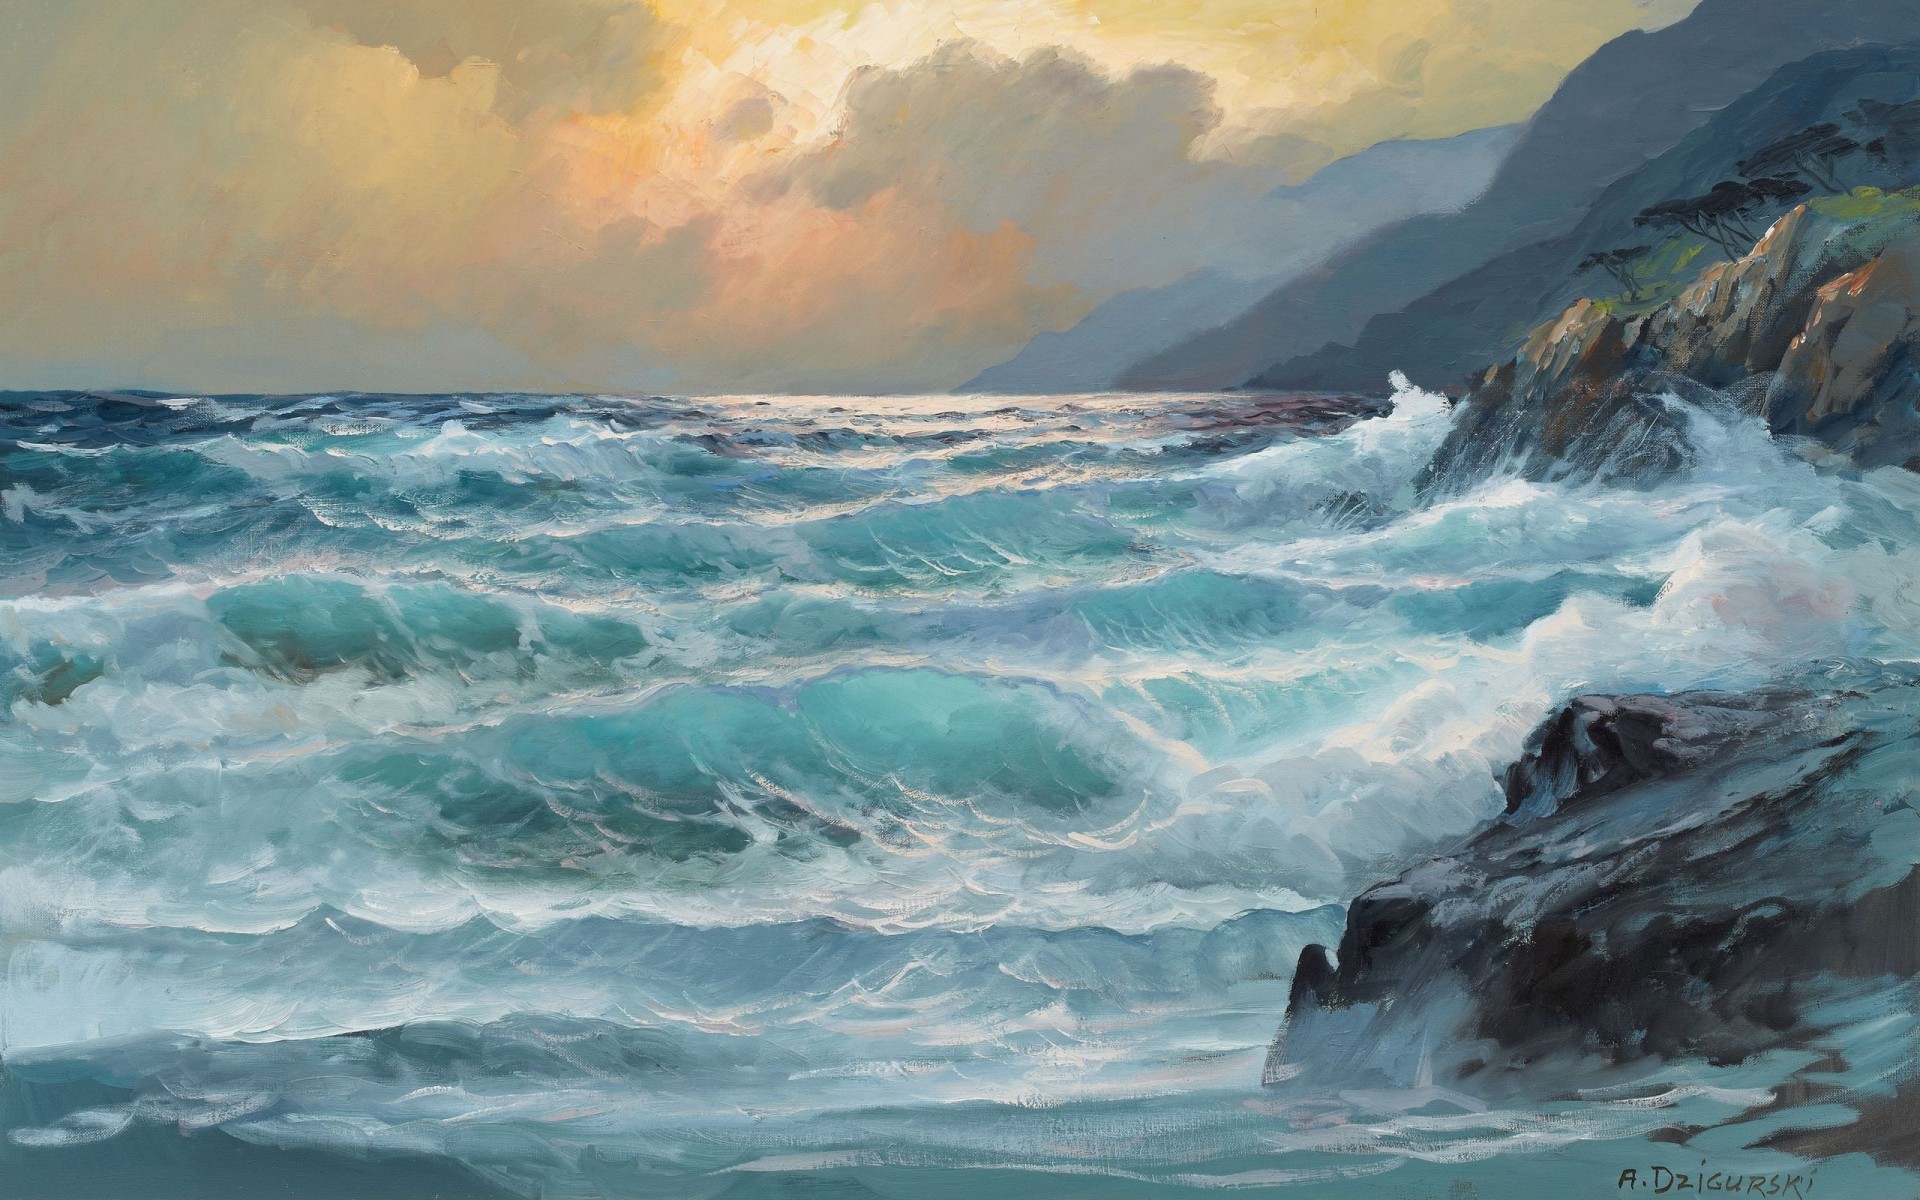 Ocean Waves Crashing into Rocks by A. Dzigurski